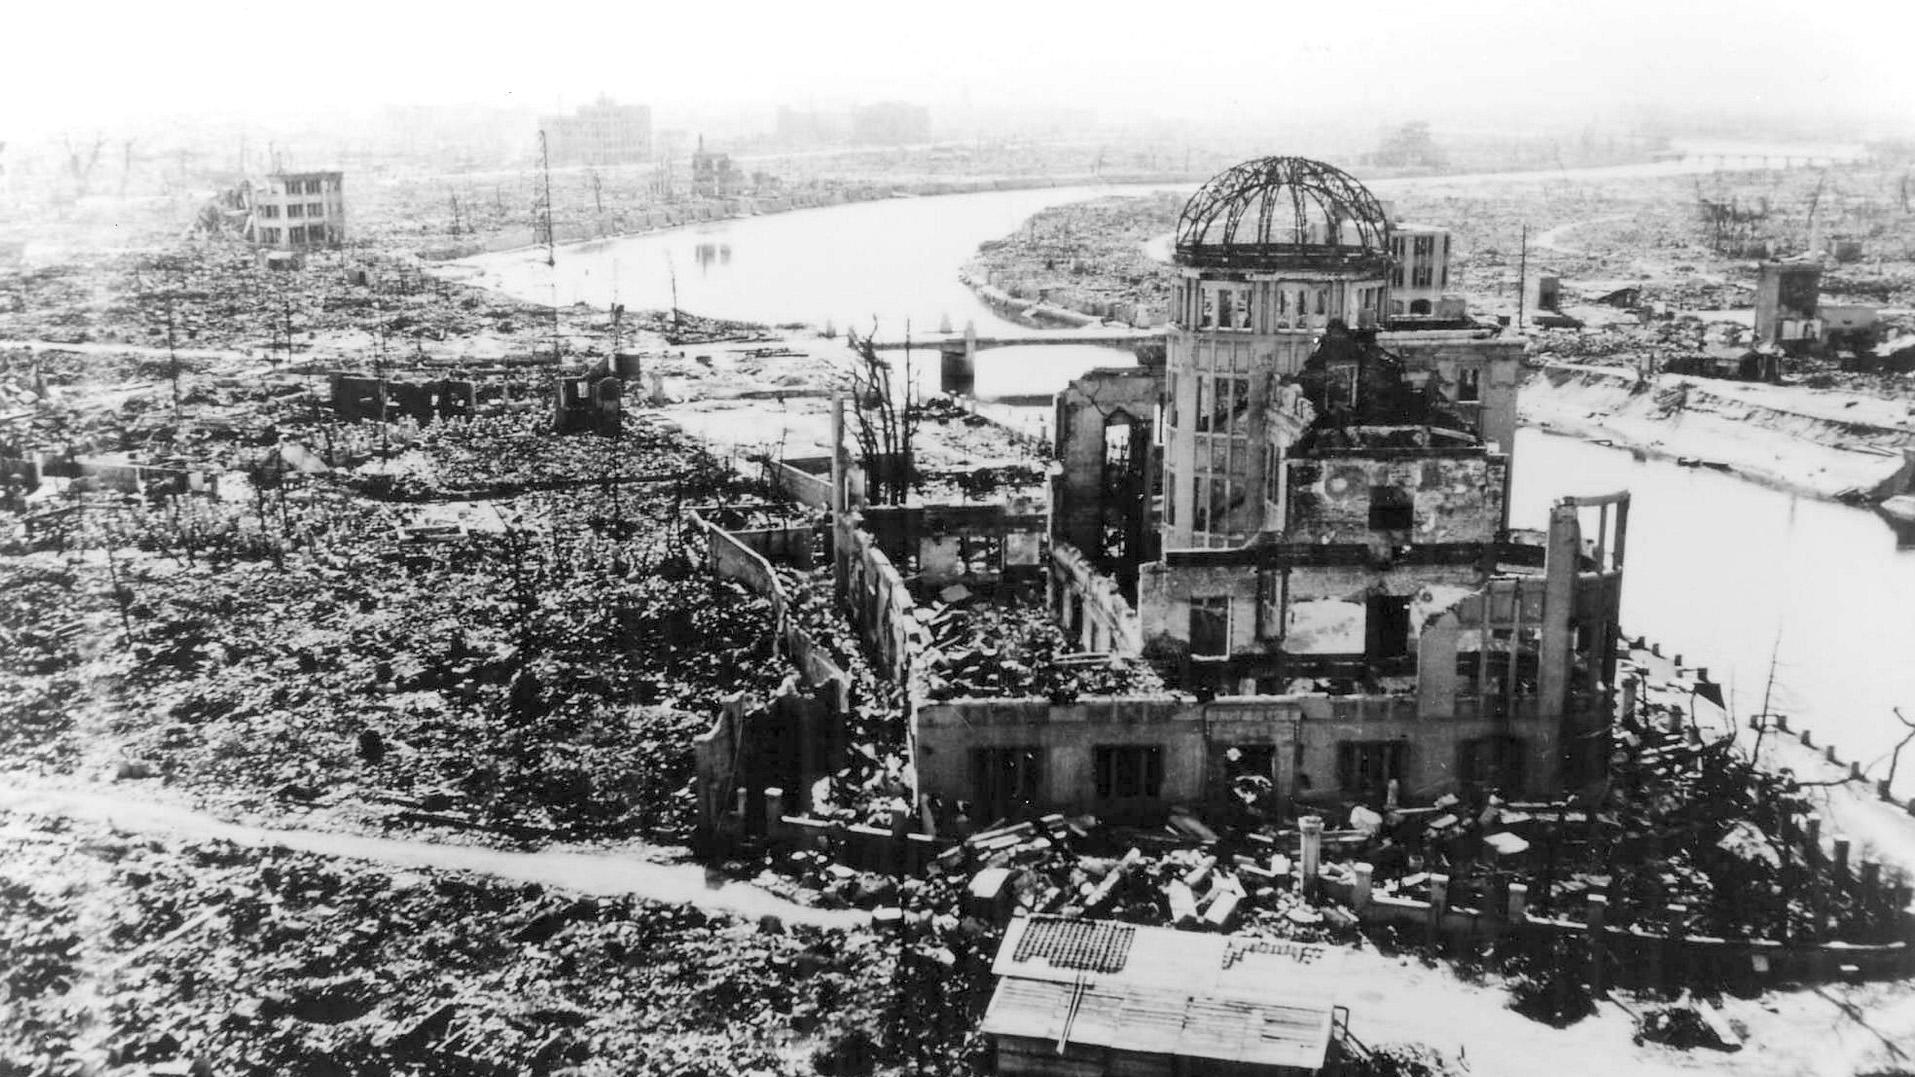 ARCHIV - 05.08.1945, Japan, Hiroshima: Das Handout des Hiroshima Peace Memorial Museums zeigt die Atombombenkuppel von Hiroshima, die vom US-Militär nach dem Atombombenabwurf fotografiert wurde. Das Gebäude, ursprünglich die Industrieförderungshalle 